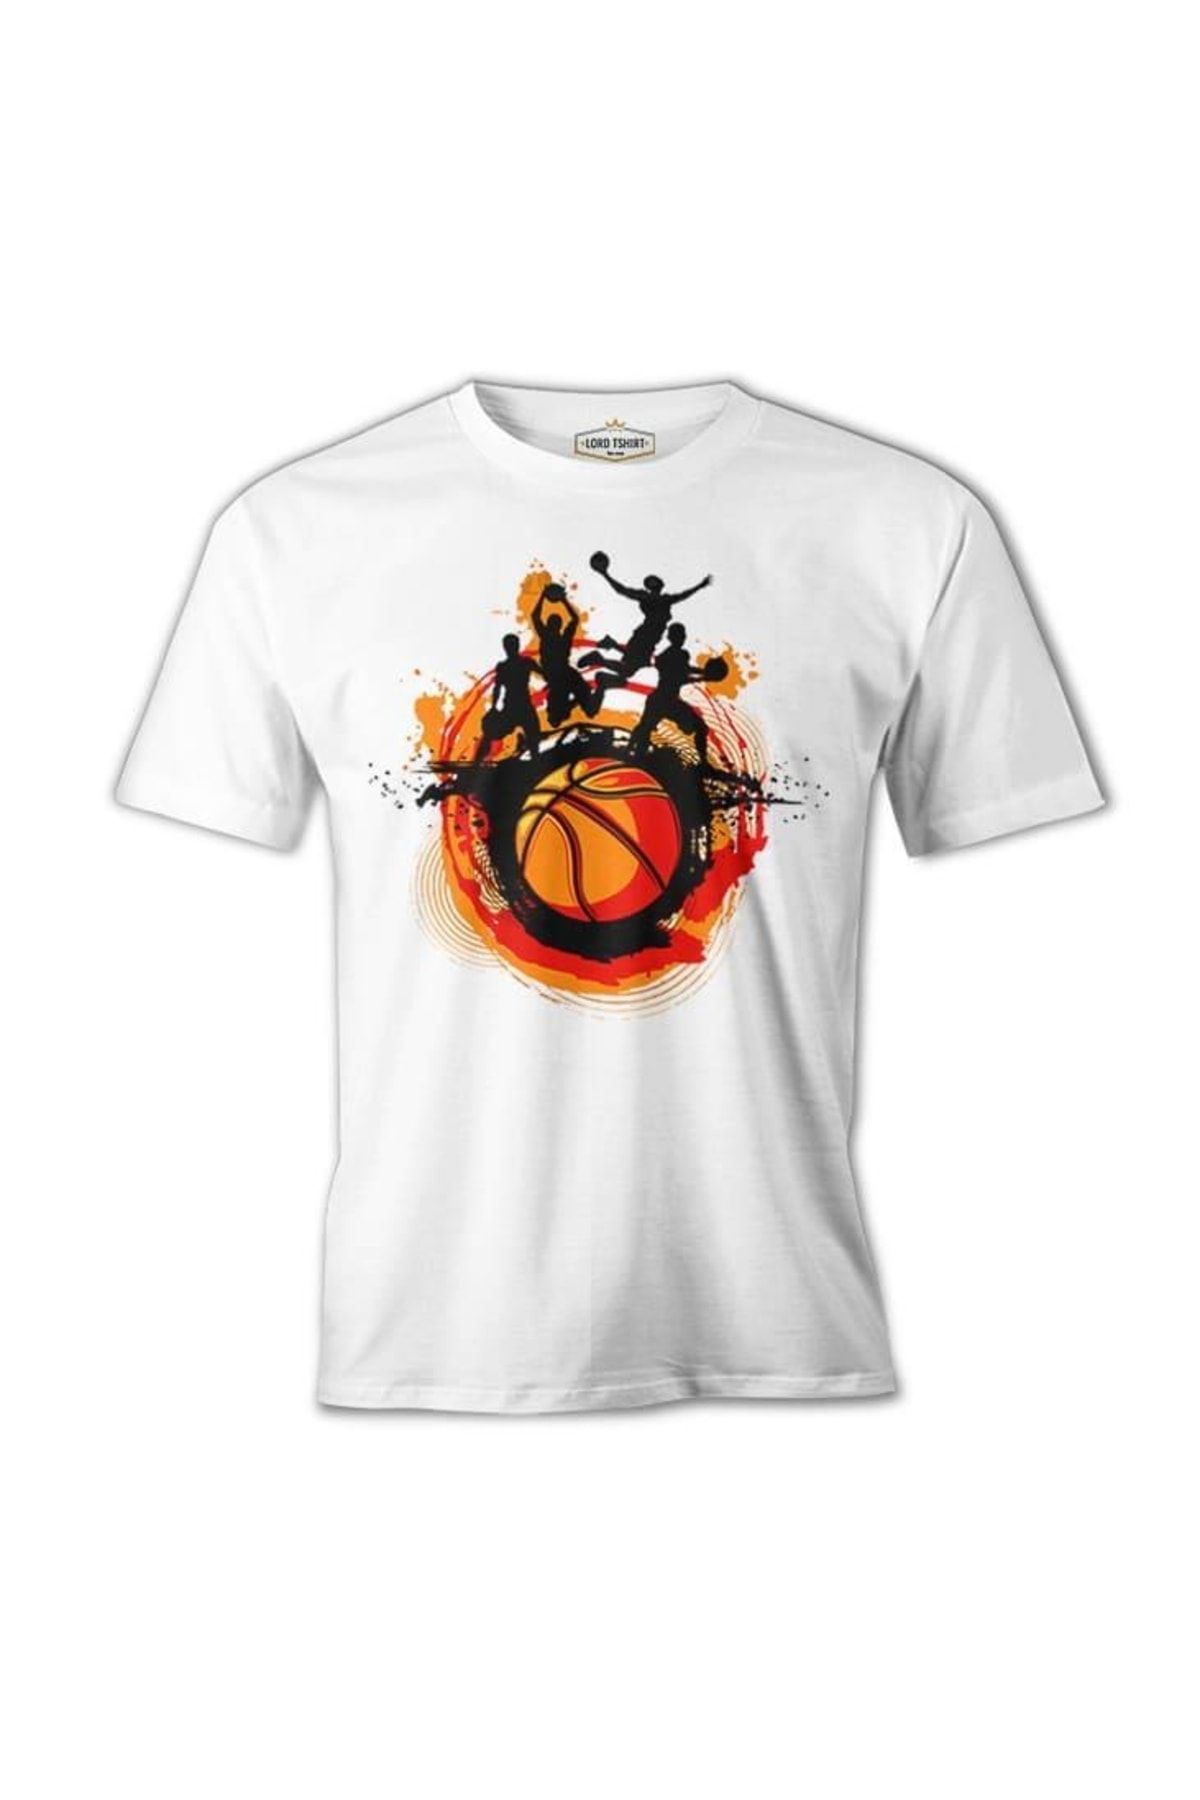 Lord T-Shirt Basketbol - Sokak Topu Beyaz Erkek Tshirt